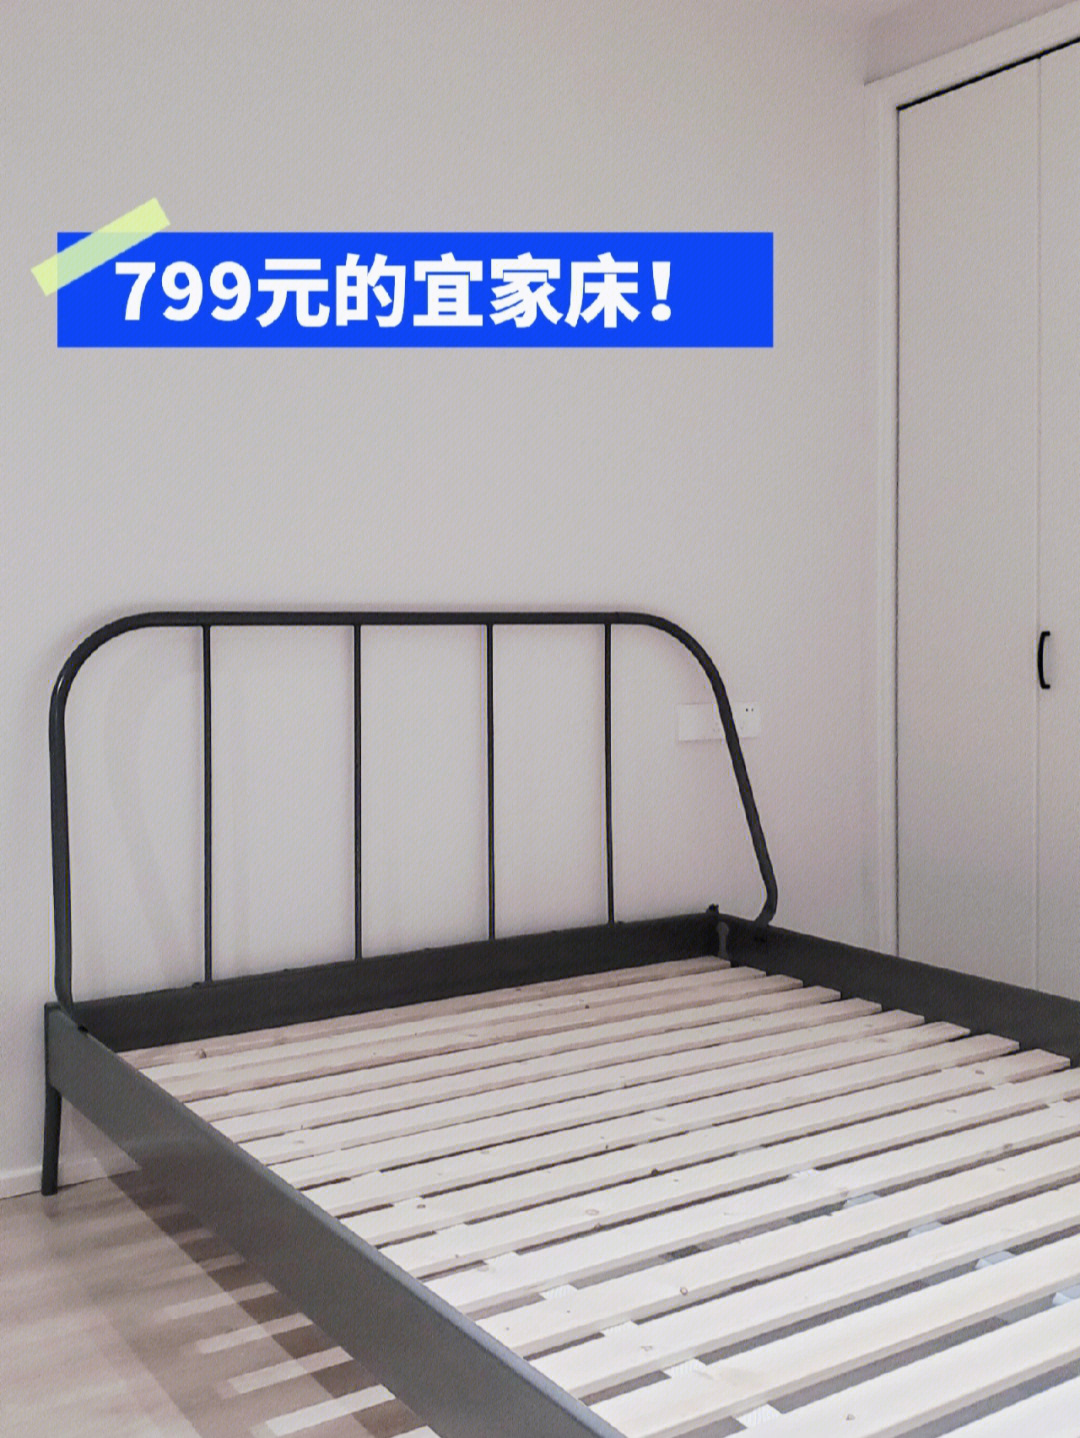 799元宜家金属床搭配小房间正好